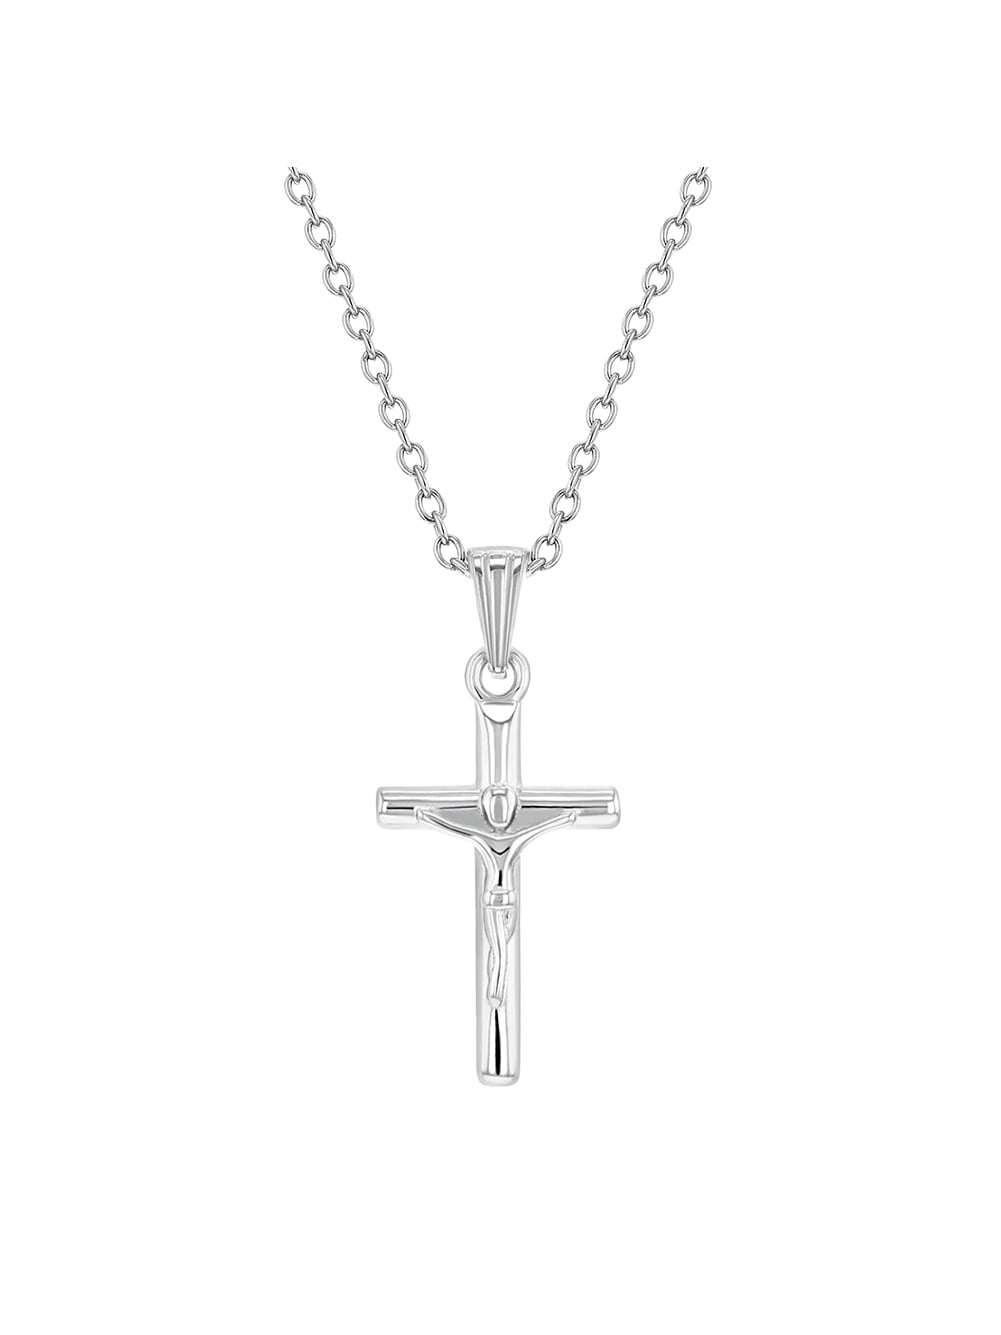 Men Gold Color Cross Necklaces Wholesale Crucifix Pendant Women Jewelry Fashion Jesus Decoration Dress 45cm By 3mm